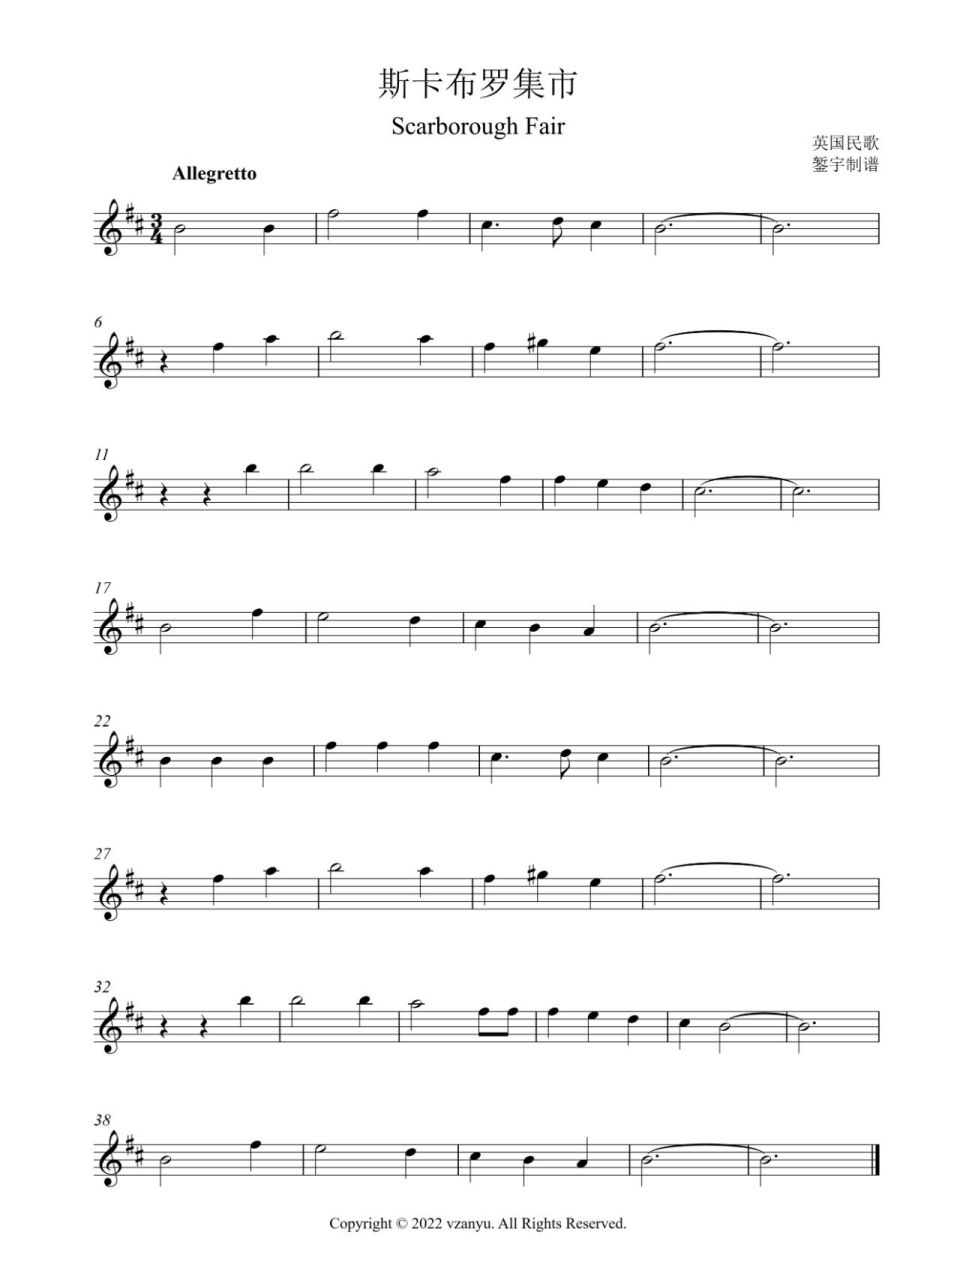 器乐谱《斯卡布罗集市》五线谱长笛,单簧管 制作的《斯卡布罗集市》